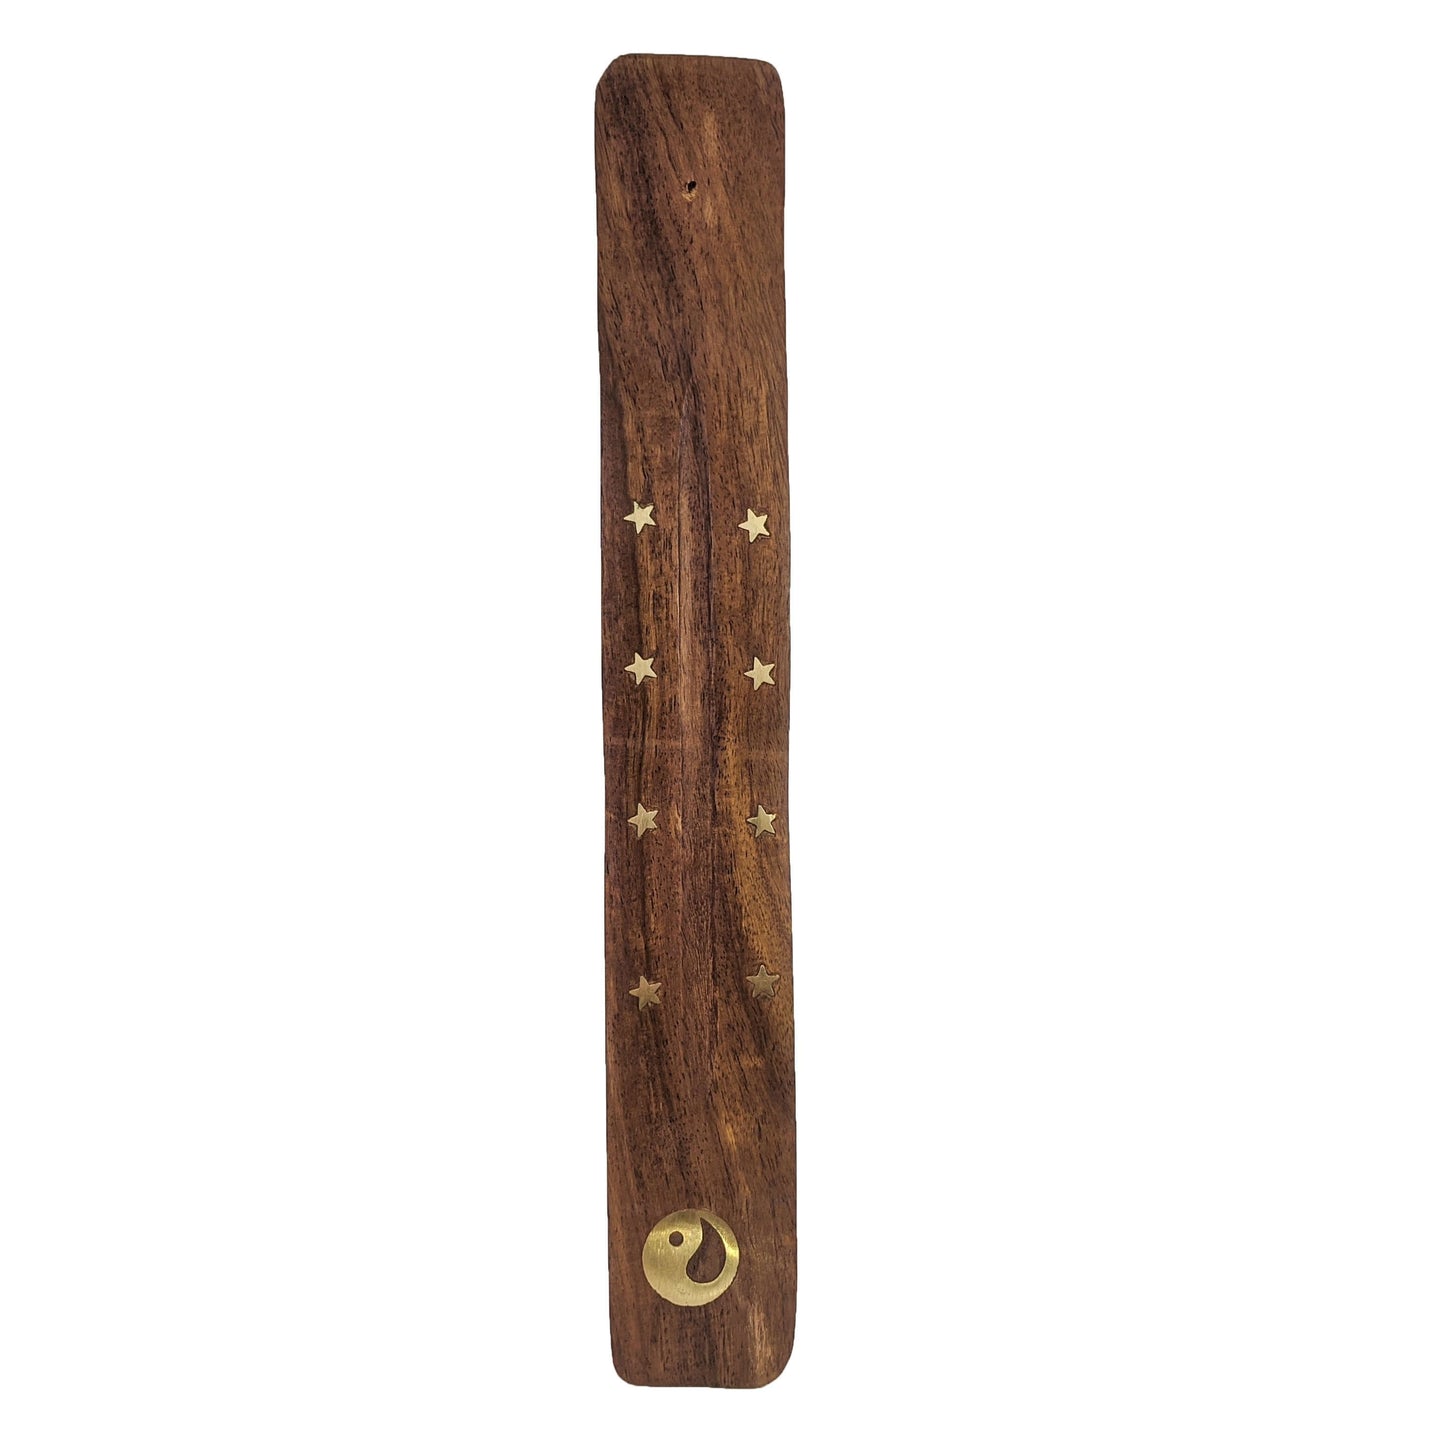 10" Wood Incense Burner & Ash Catcher, Yin Yang Symbol Design